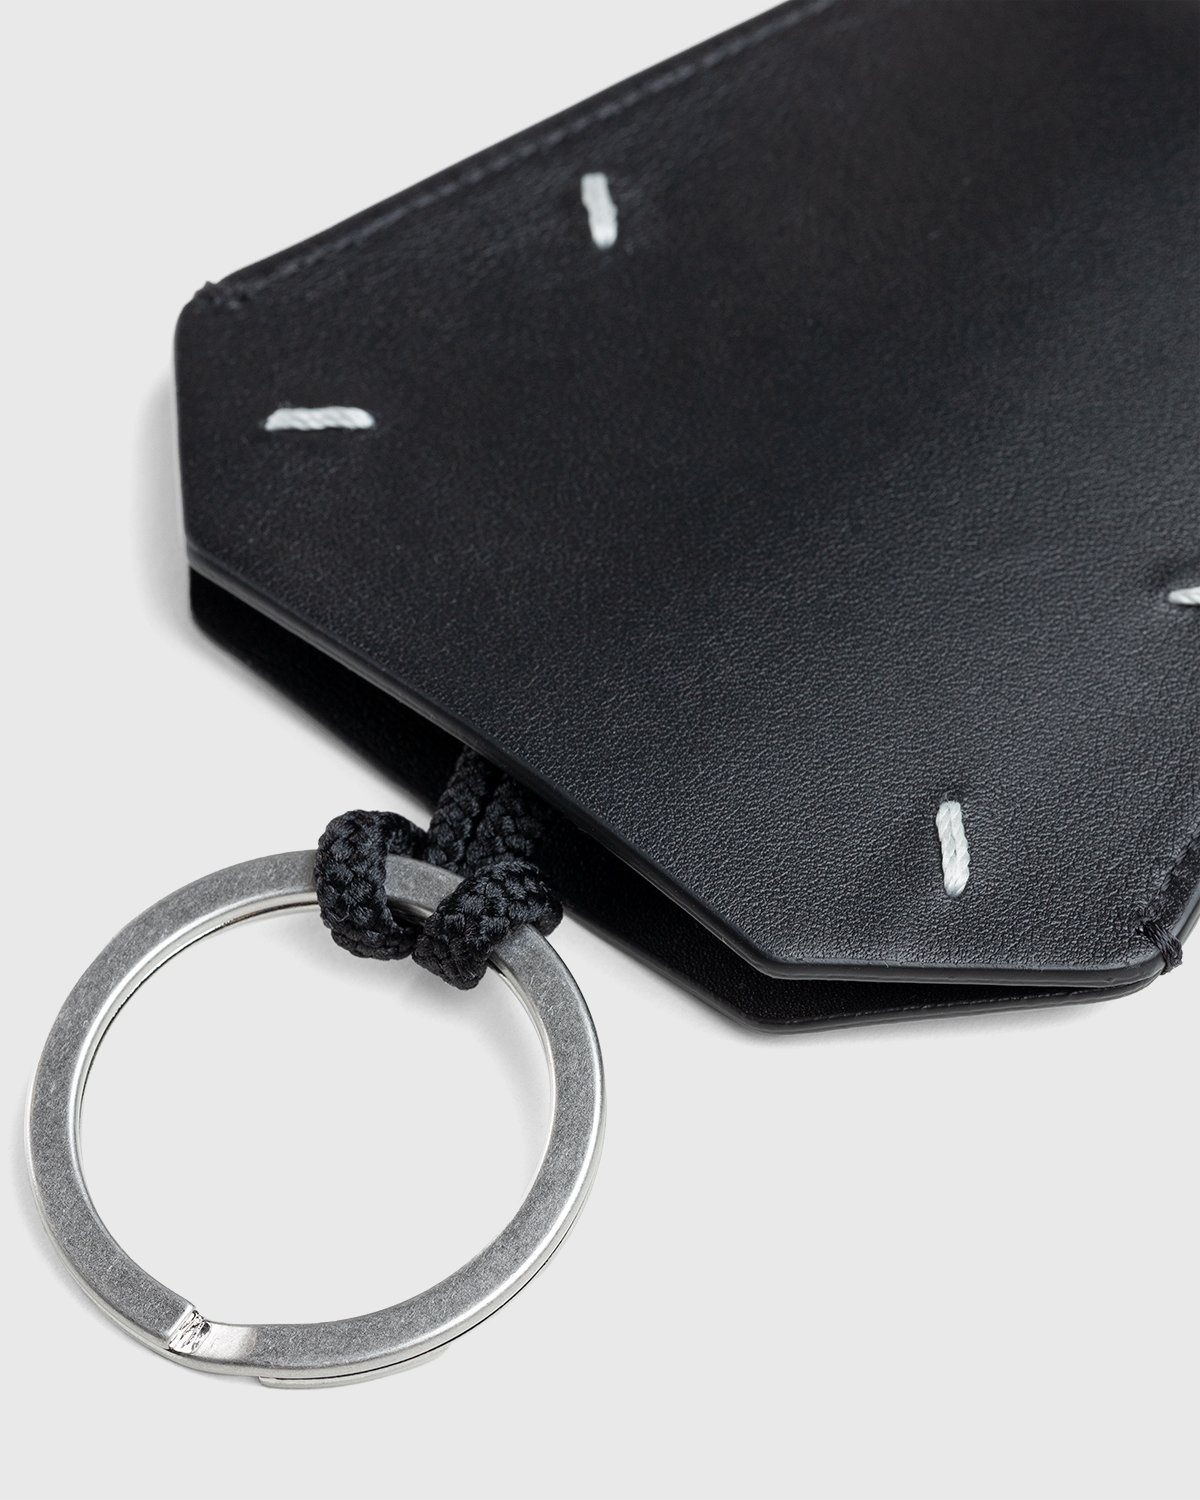 Maison Margiela – Leather Key Ring Black - Keychains - Black - Image 3